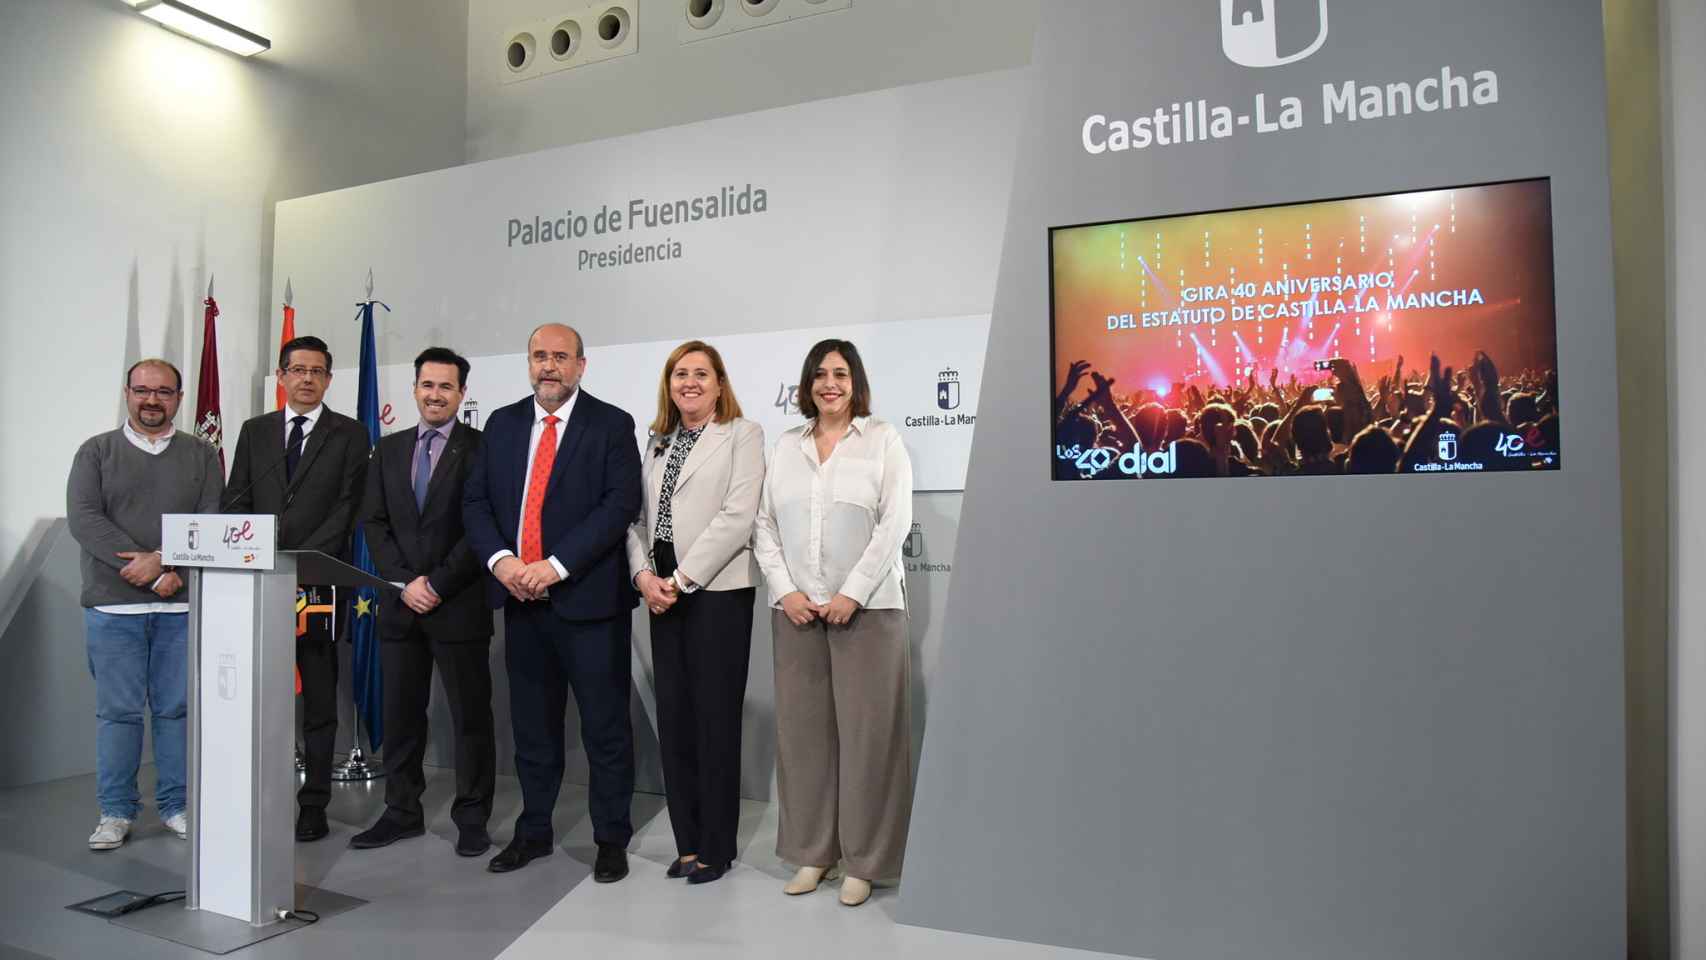 Presentación de los conciertos para el 40 aniversario del Estatuto de Castilla-La Mancha.